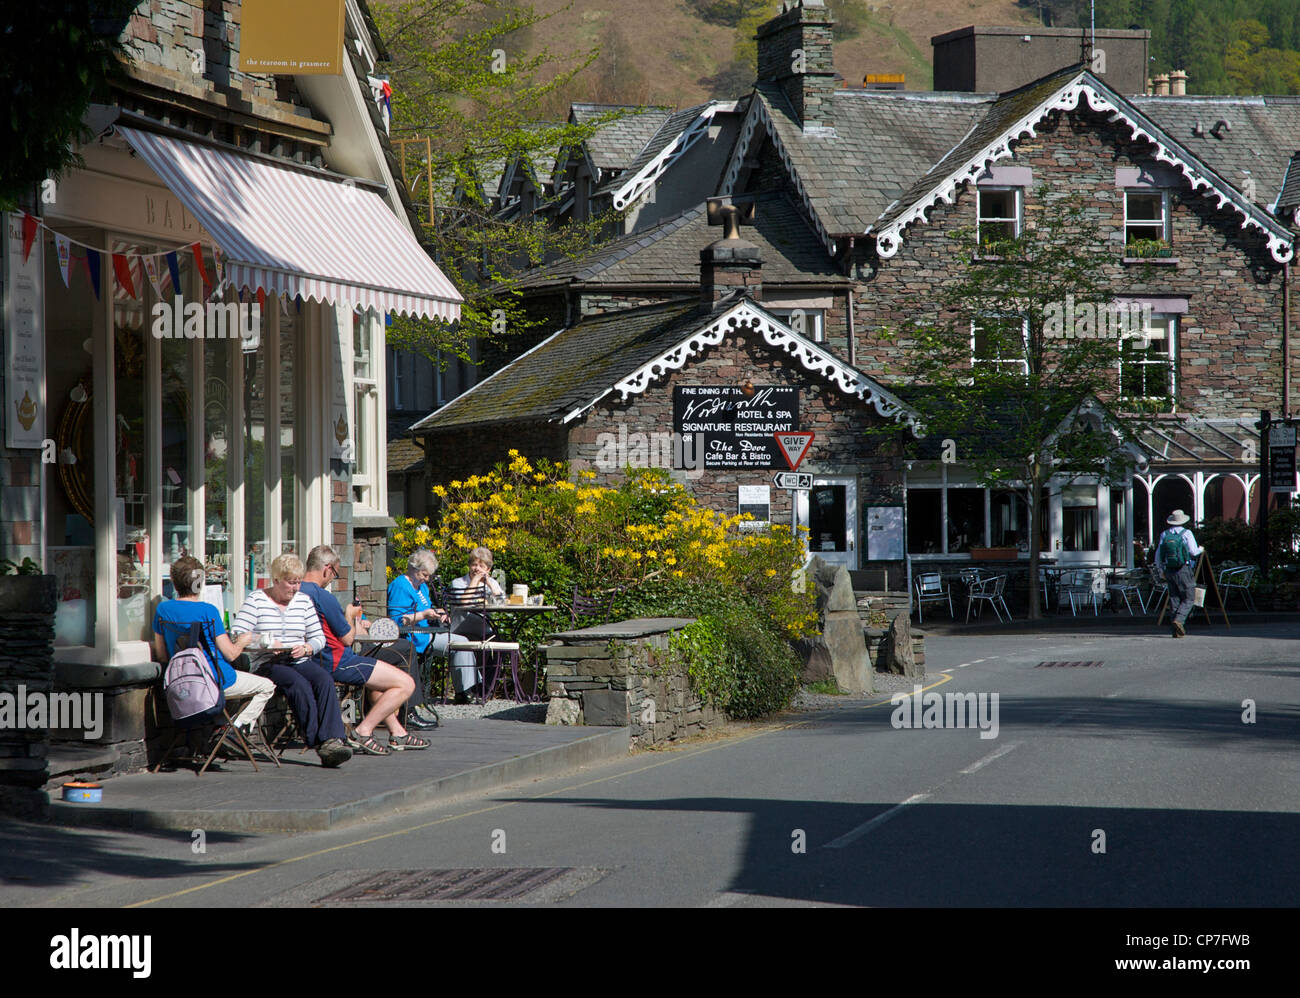 Les gens assis à l'extérieur salon de thé, dans le village de Grasmere, Parc National de Lake District, Cumbria, Angleterre, Royaume-Uni Banque D'Images